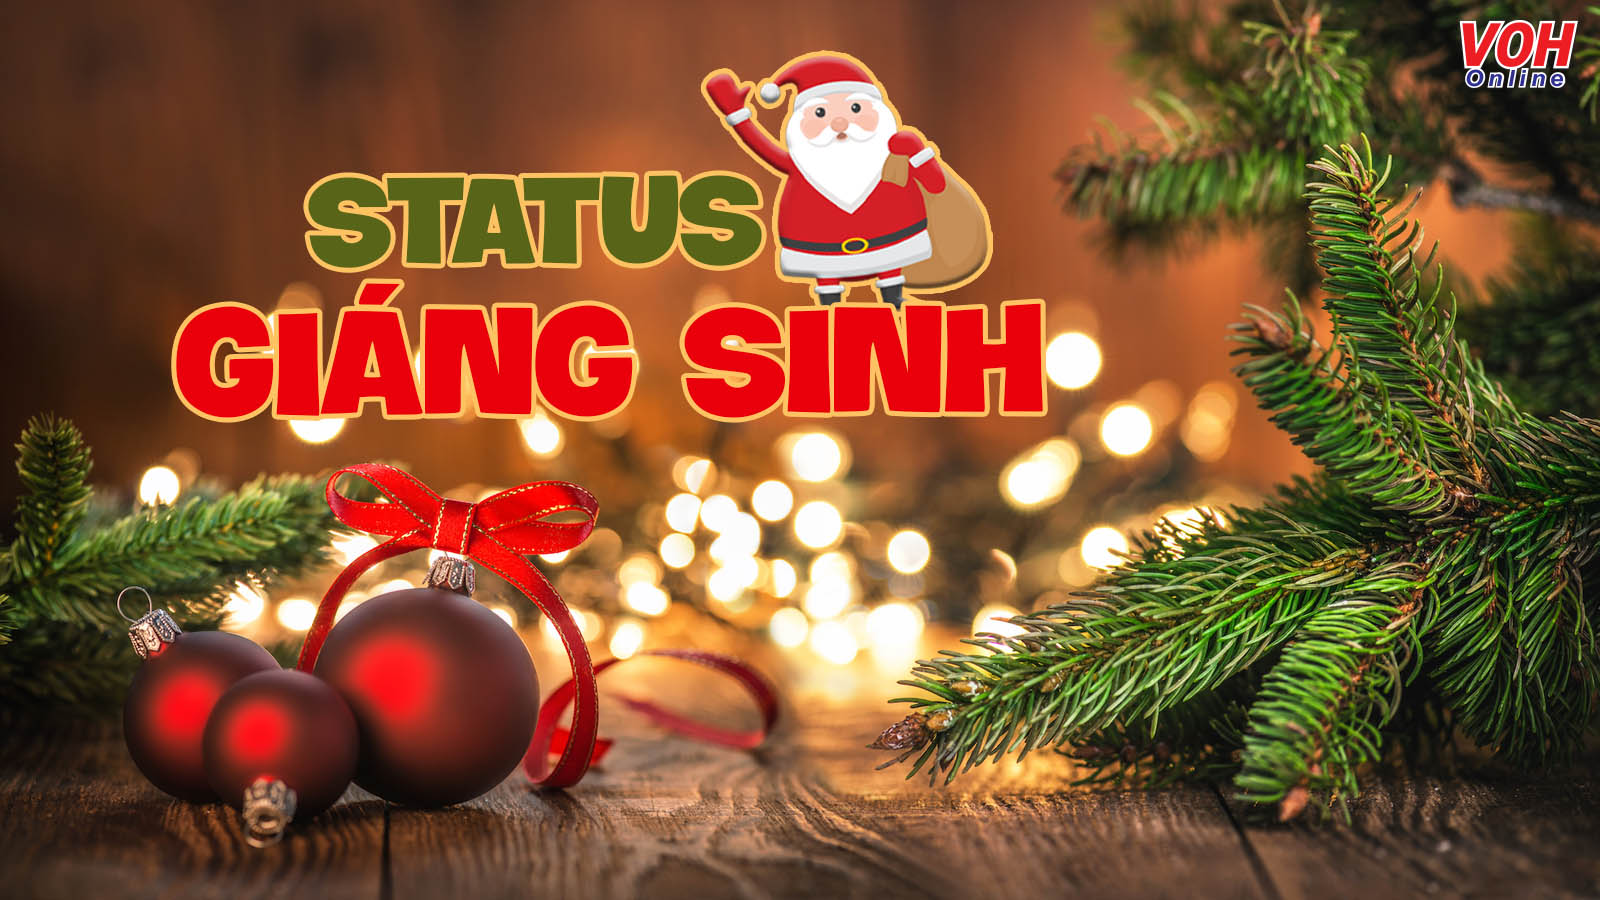 30 Status Giáng Sinh Hay Và Ý Nghĩa Cho Bạn Update Facebook, Instagram